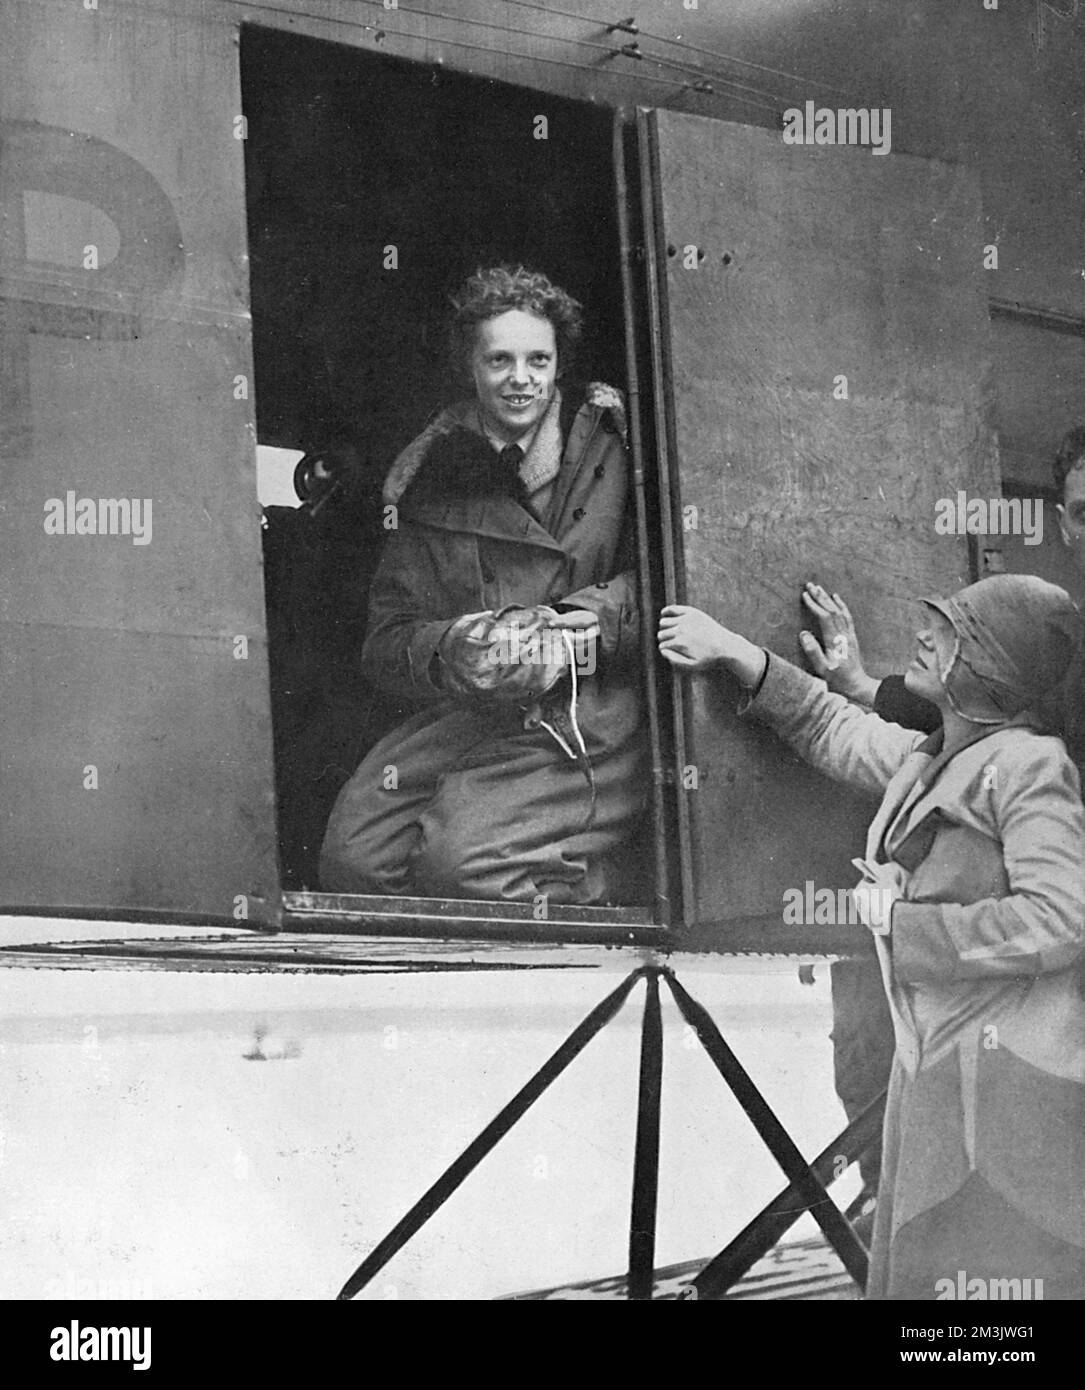 Amelia Earhart (1897 - 1937) pochi istanti dopo aver completato il suo volo trans-Atlantico nel 1928. Anche se solo un passeggero, Earhart è stata la prima donna a volare l'Atlantico. Preoccupata dal fatto che i suoi piloti in questo viaggio storico non avevano ricevuto alcun credito, ha deciso di volare da sola, finalmente raggiungendo il suo obiettivo nel maggio 1932 quando ha volato da Terranova in Irlanda del Nord. L'aereo di Earhart si è perso durante un volo intorno al mondo con il suo navigatore, Frederick Noonan nel 1937. 1928 Foto Stock